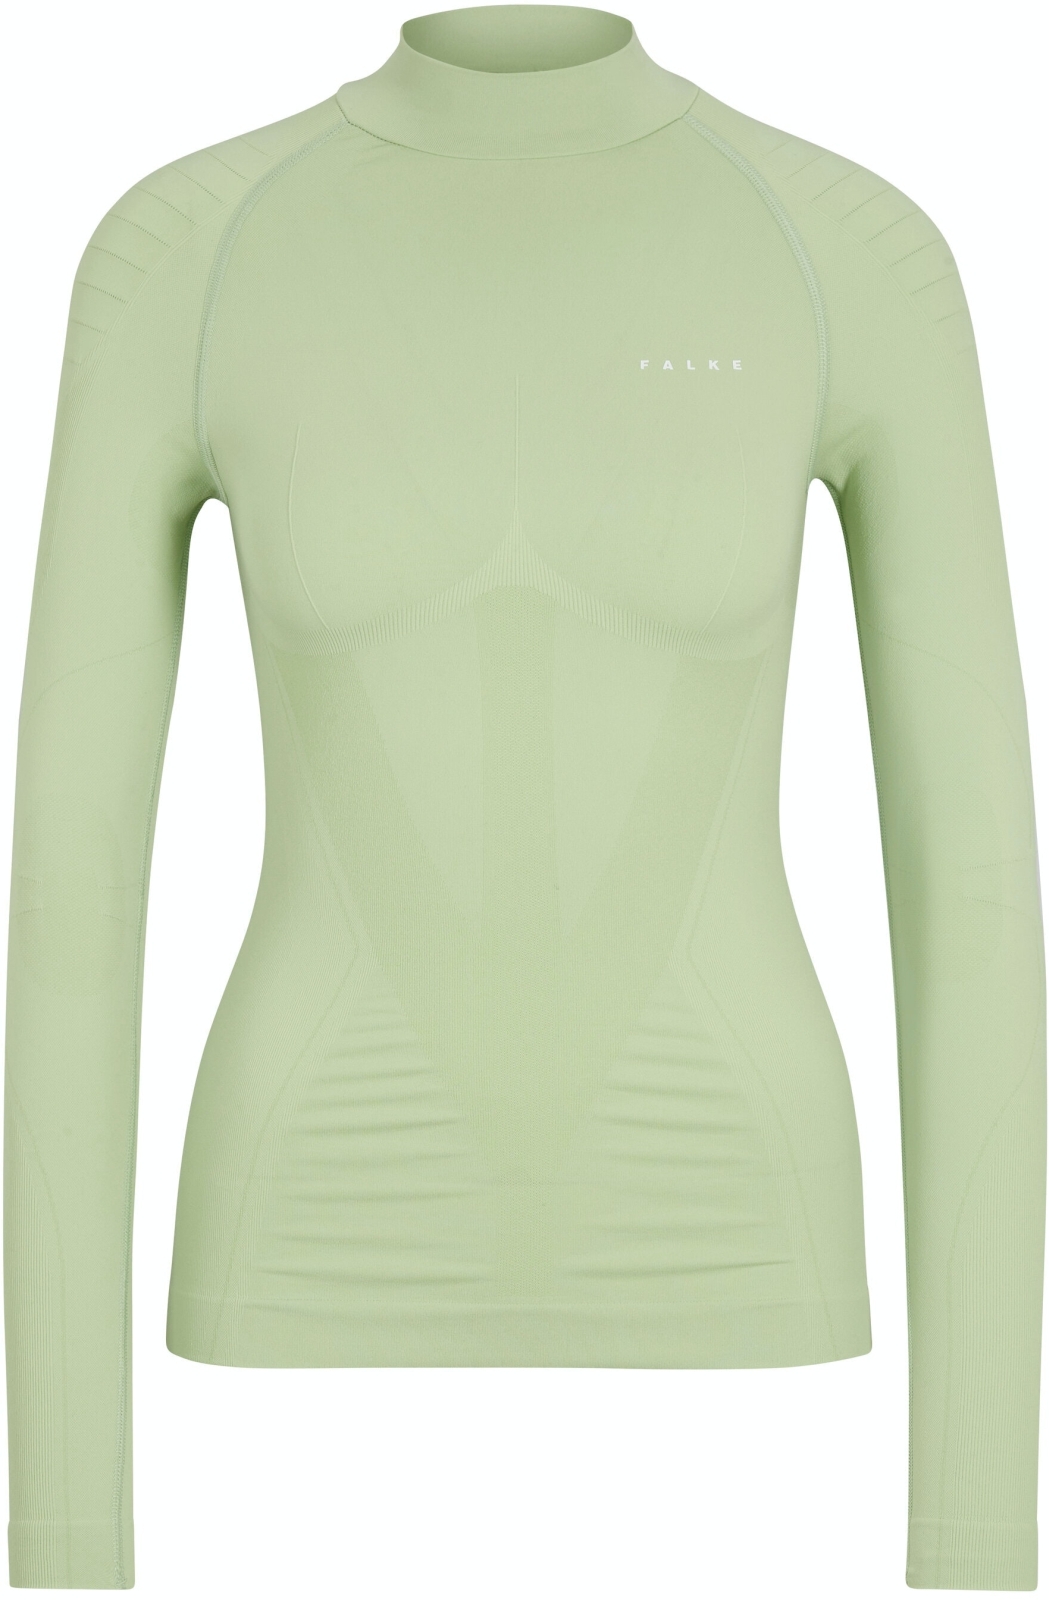 E-shop Falke Women long sleeve Shirt Warm - quiet green XS